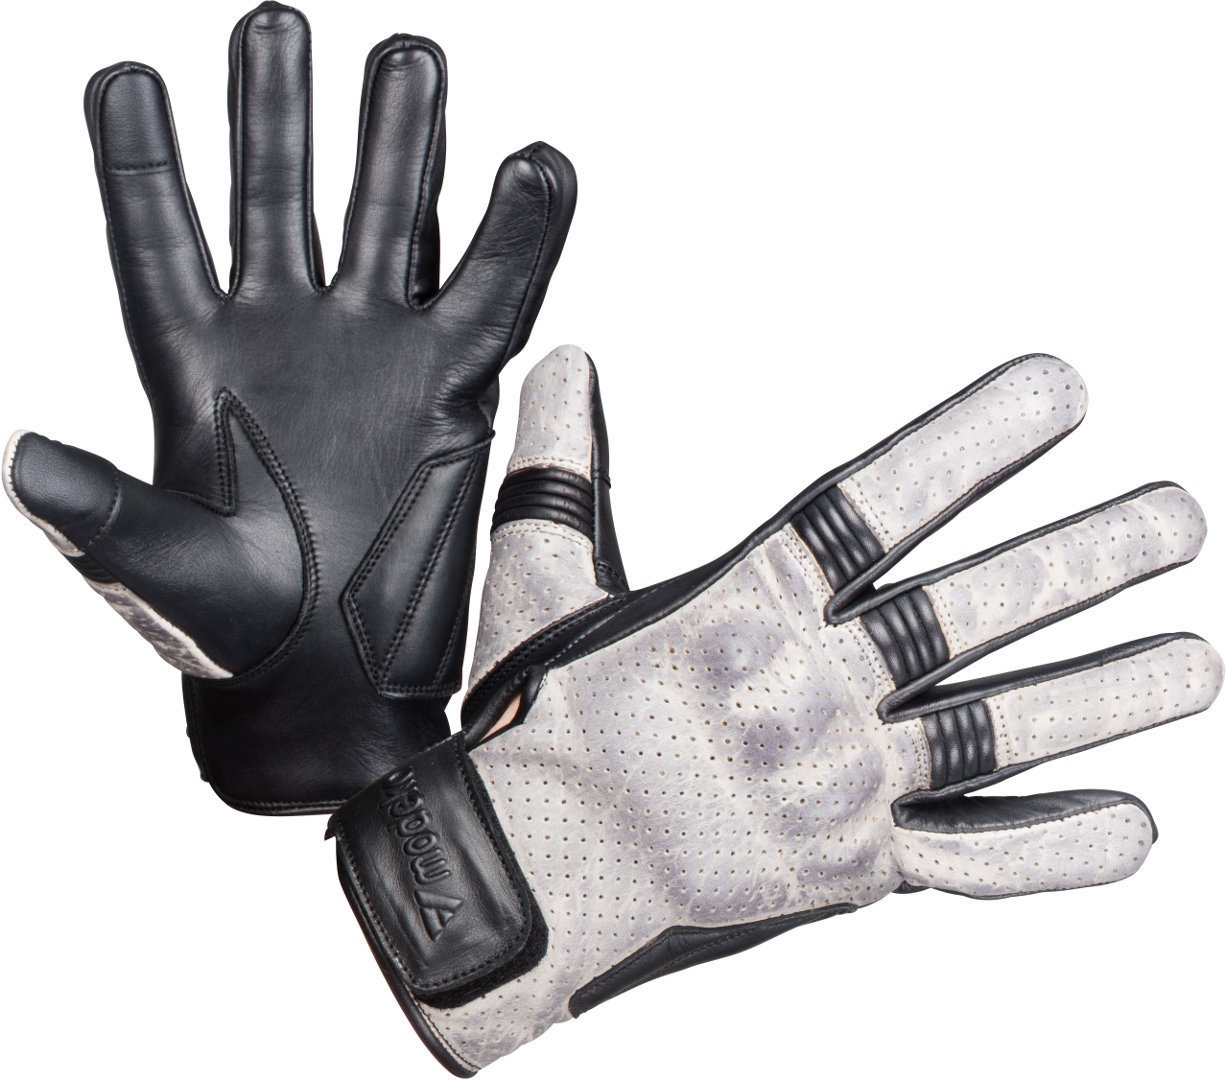 Modeka Hot Two De Handschoenen van de motorfiets, zwart-grijs, M L